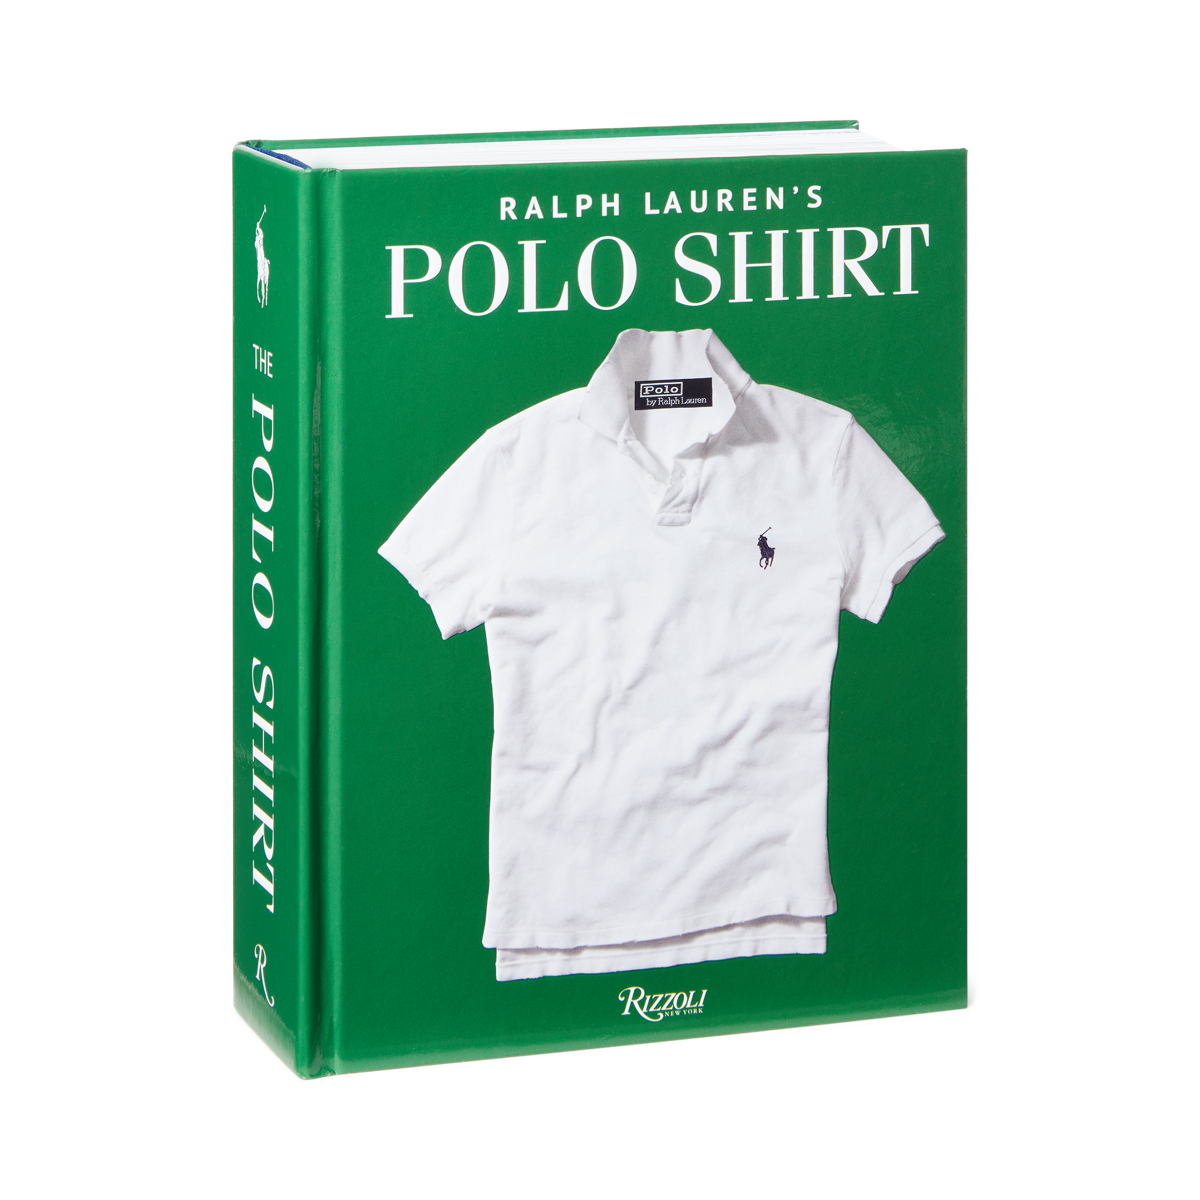 Ralph Lauren’s Polo Shirt Book | Ralph Lauren